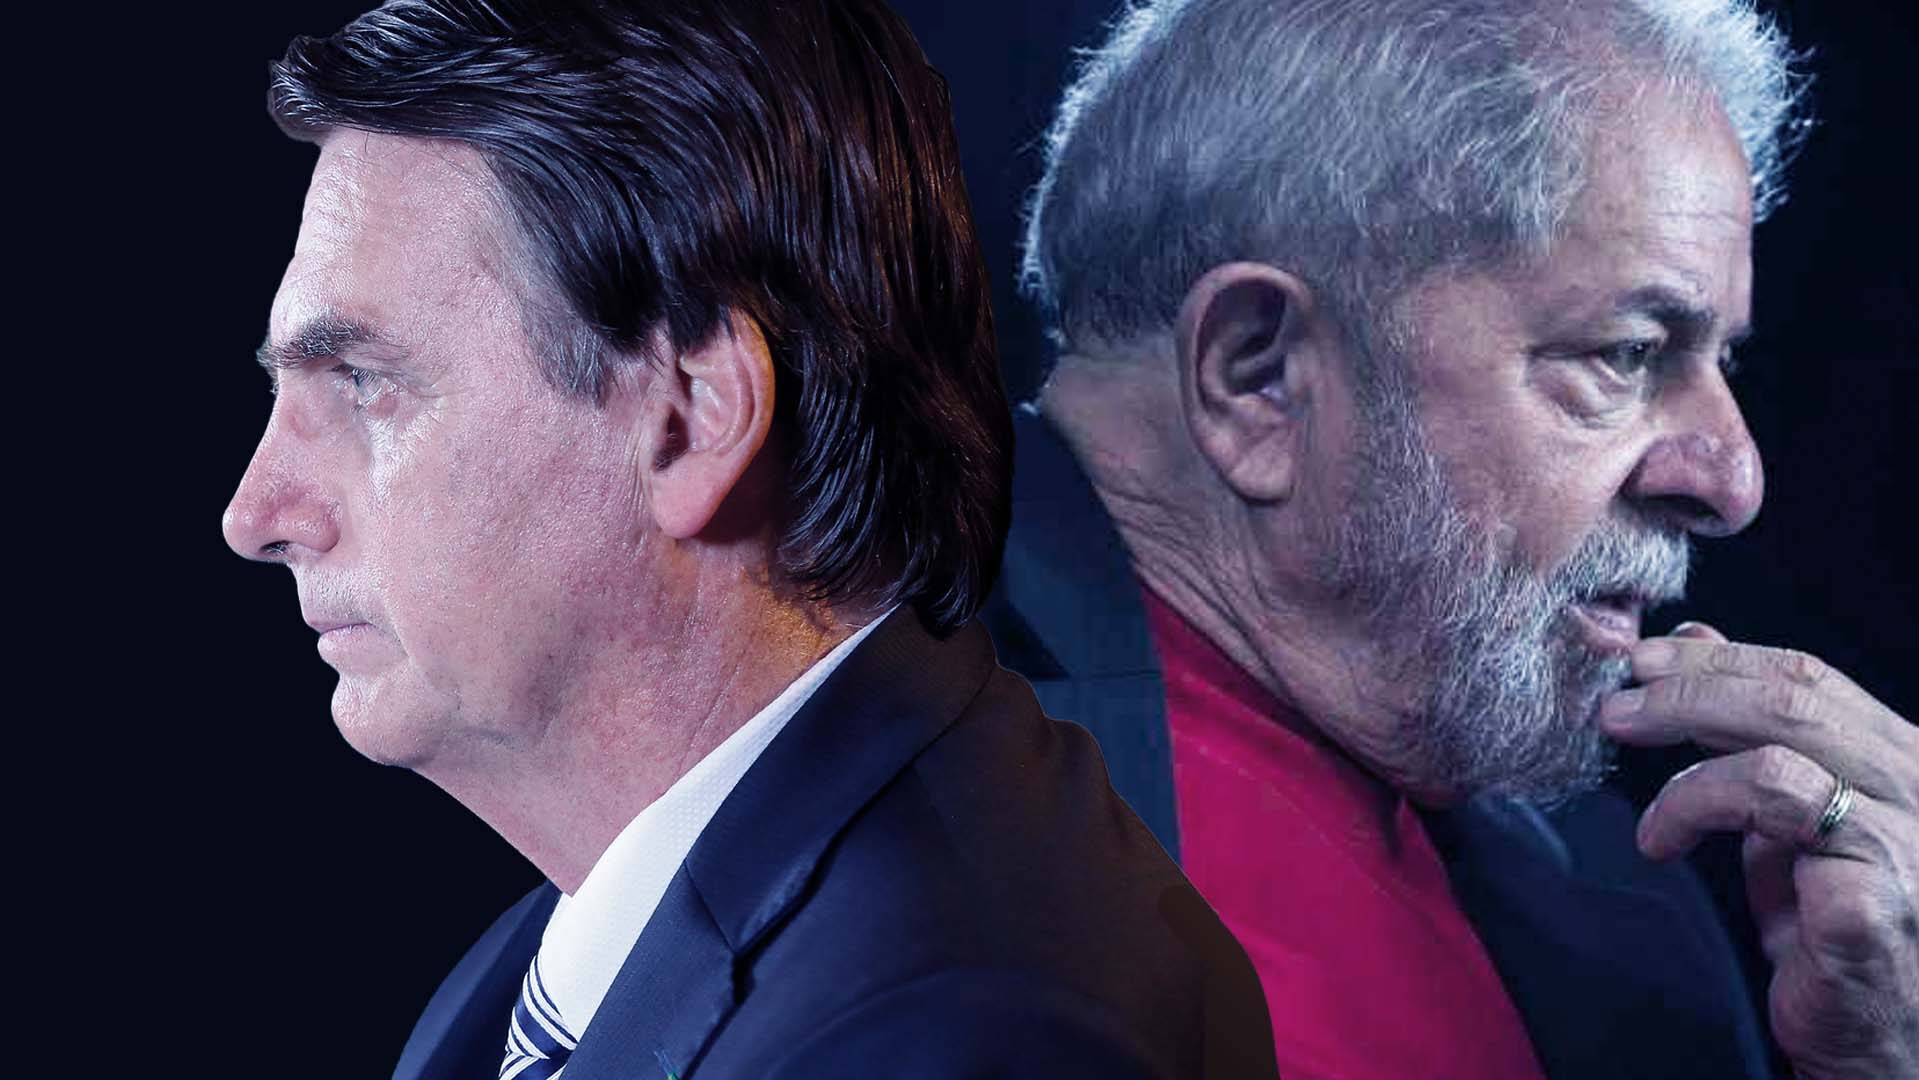 Datafolha: Lula tem 49% das intenções de voto contra 44% de Bolsonaro - InfoMoney